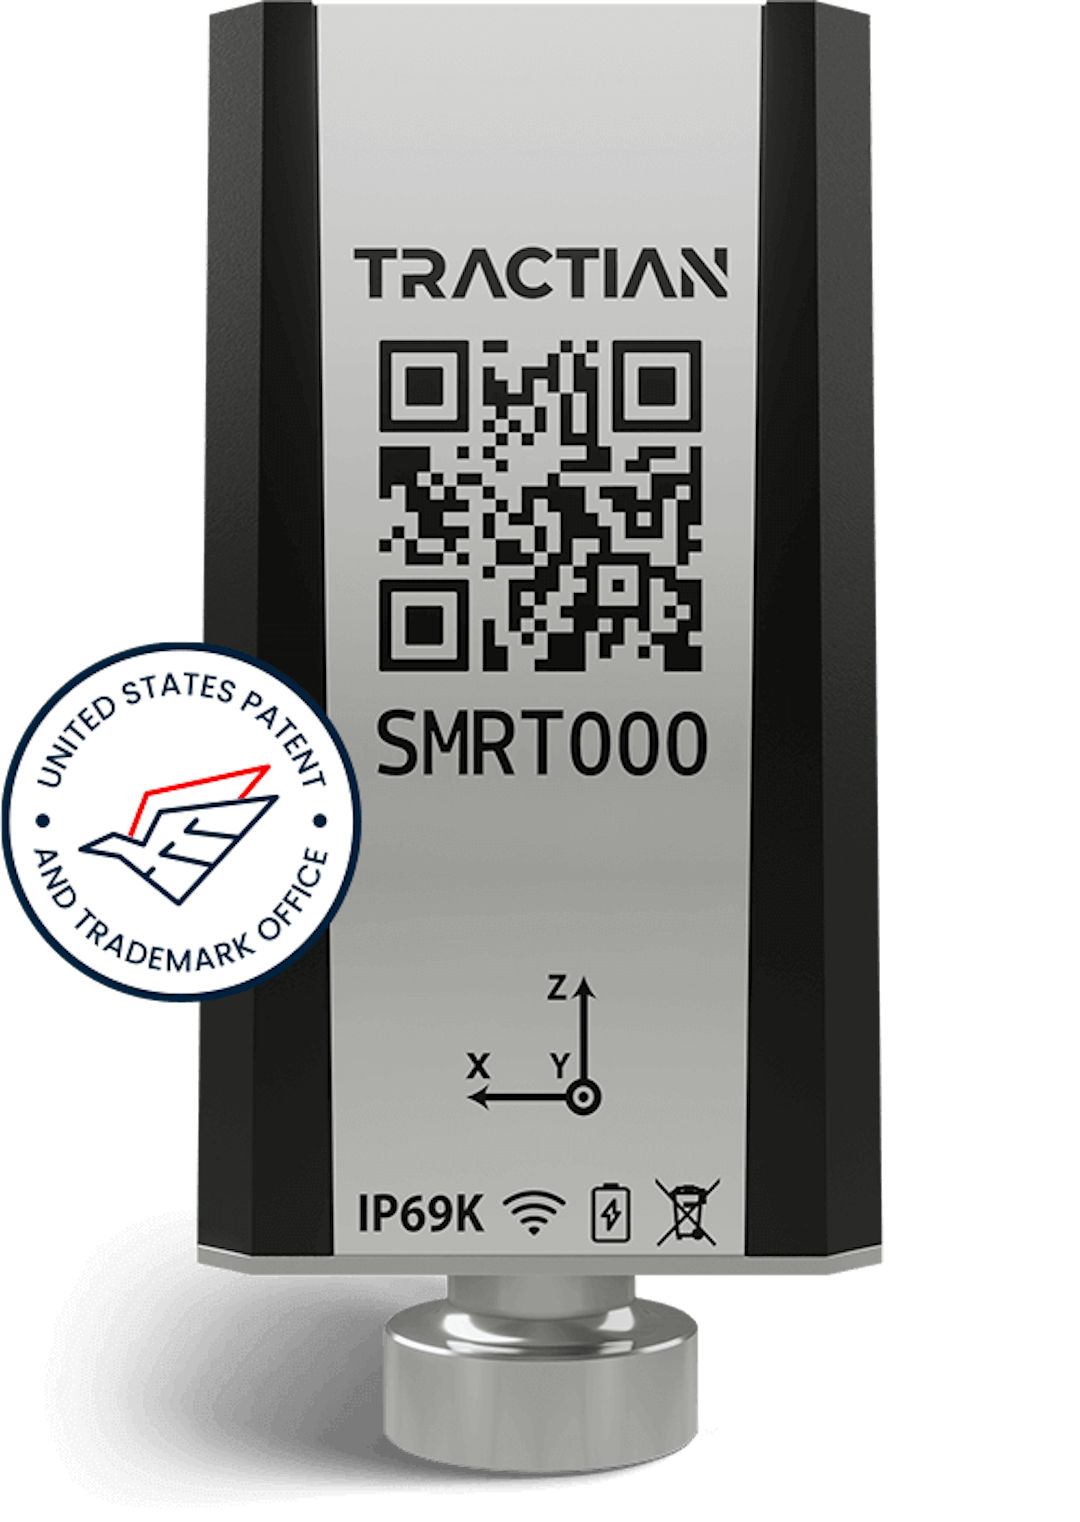 industrial vibration sensor smart tract tractian